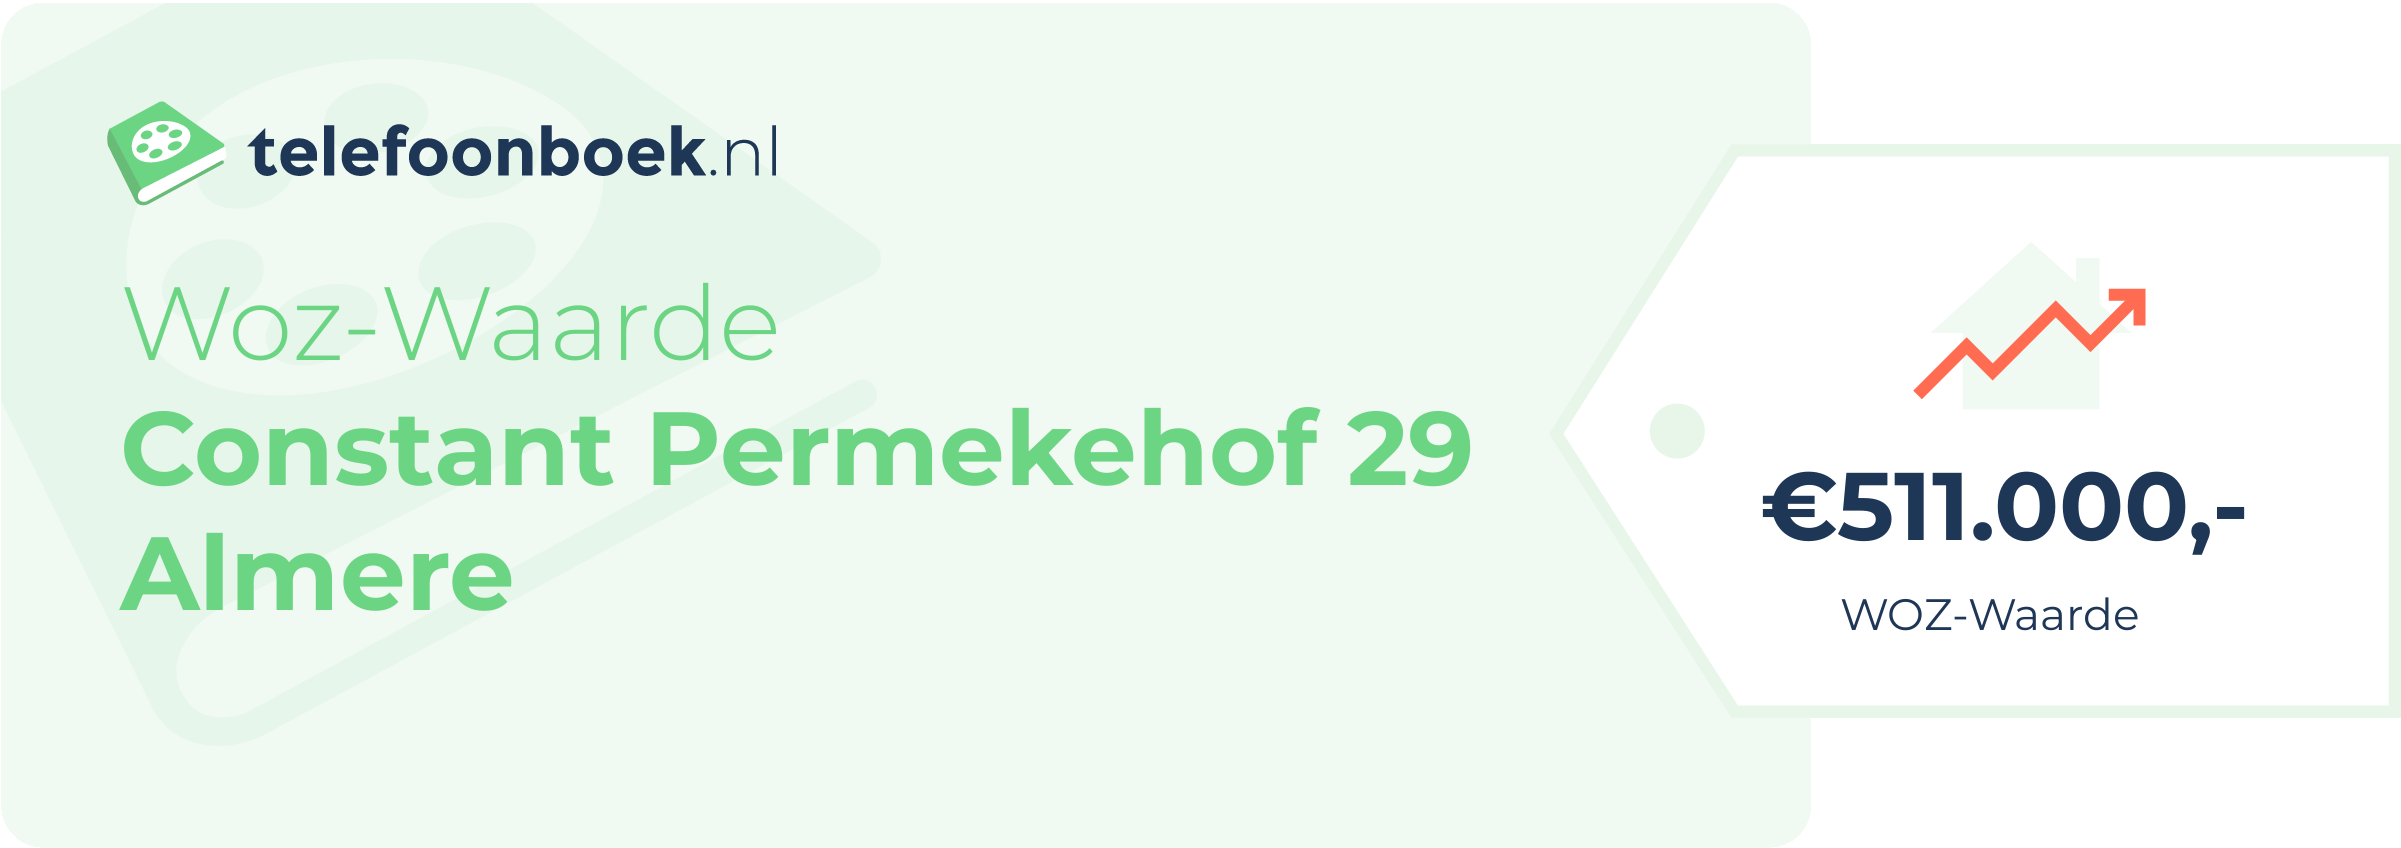 WOZ-waarde Constant Permekehof 29 Almere